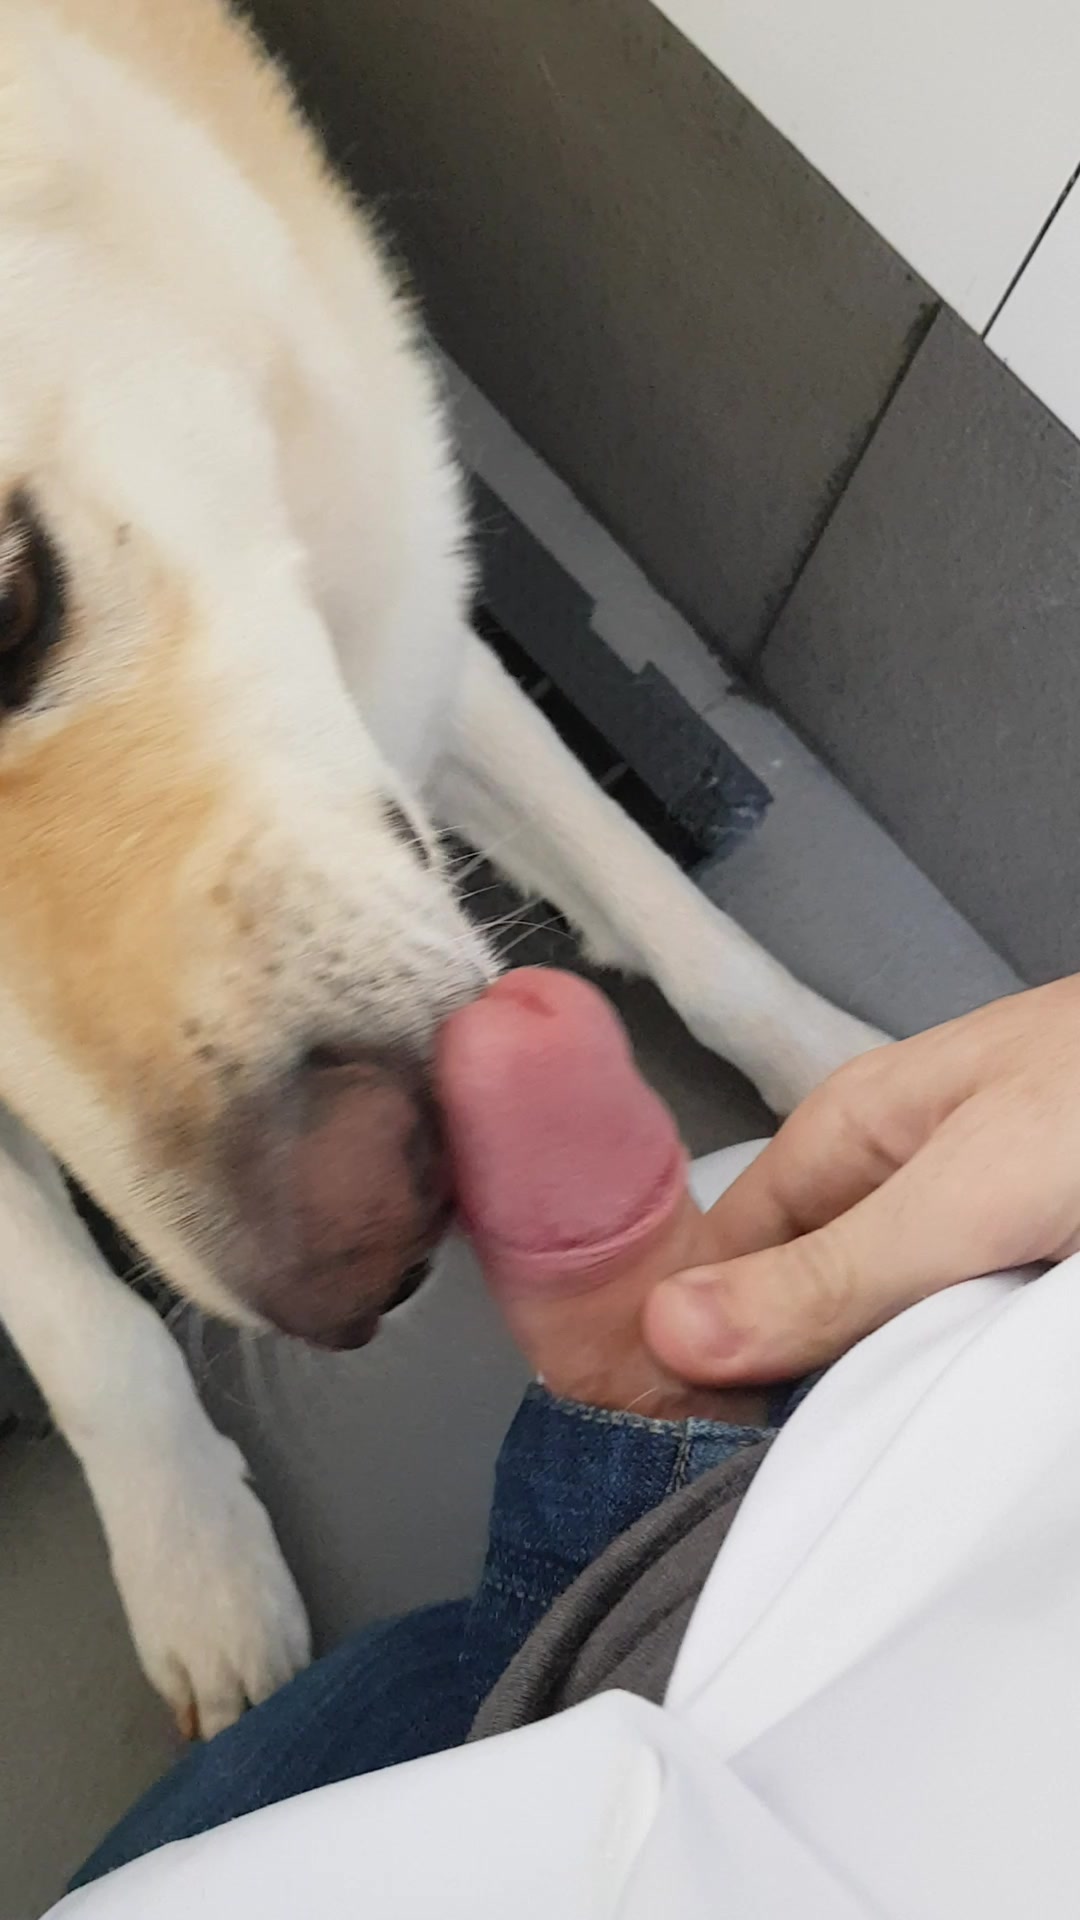 Dog licking dick